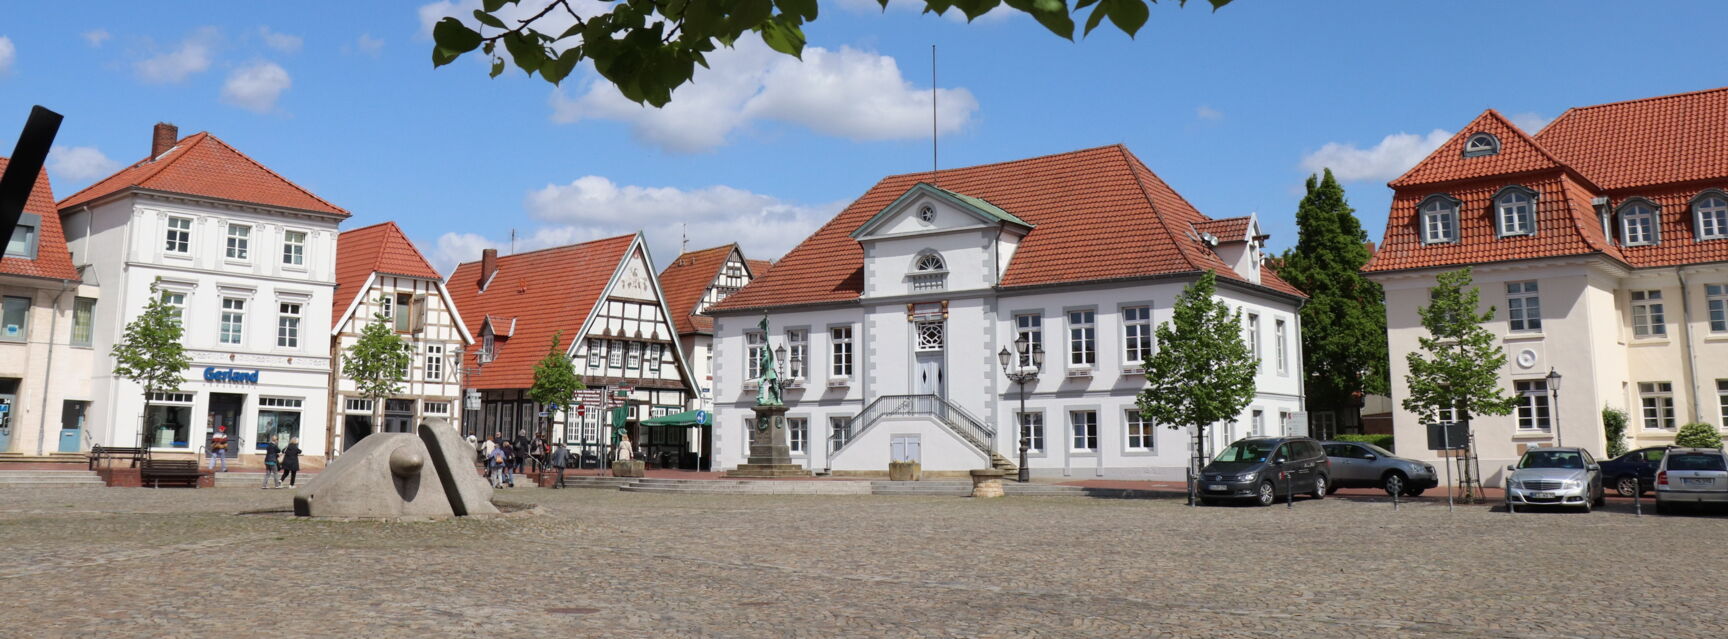 Marktplatz mit Rathaus © Samtgemeinde Artland